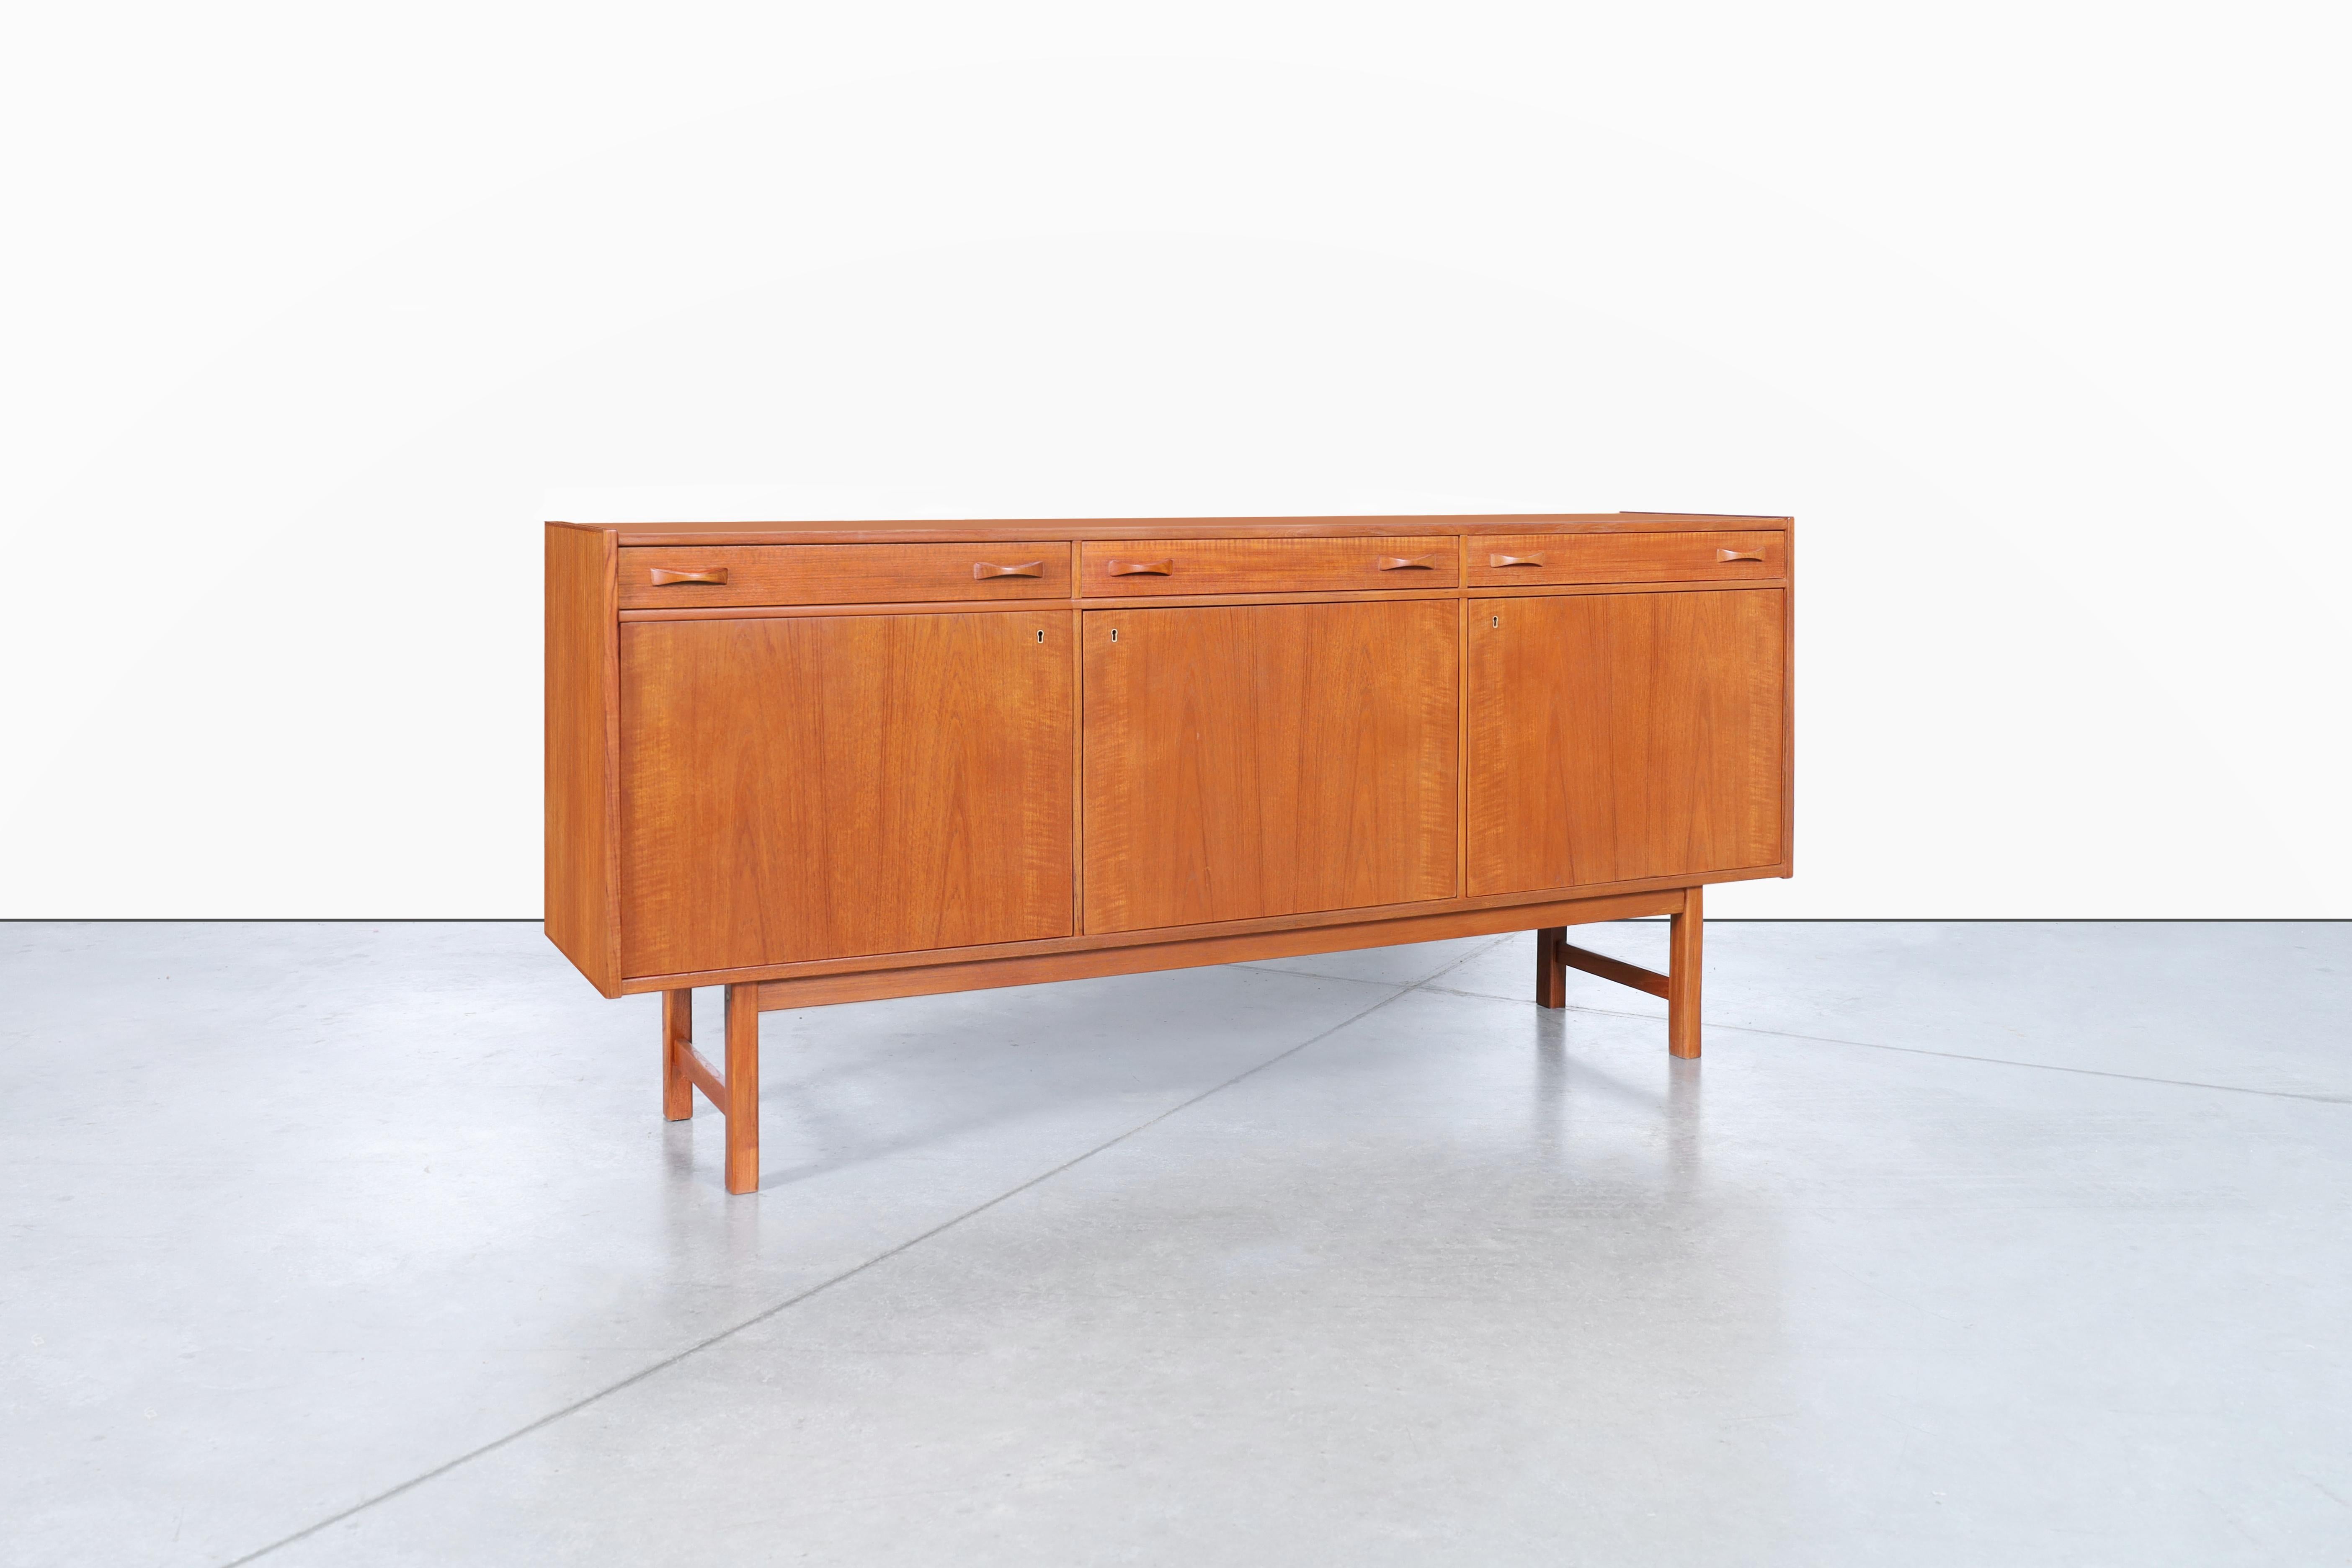 Cette crédence en teck du milieu du siècle, conçue par Tage Olofsson pour Ulferts Mobler en Suède dans les années 1960, est un meuble étonnant fabriqué à partir d'un bois de teck de la plus haute qualité. Son design scandinave élégant et